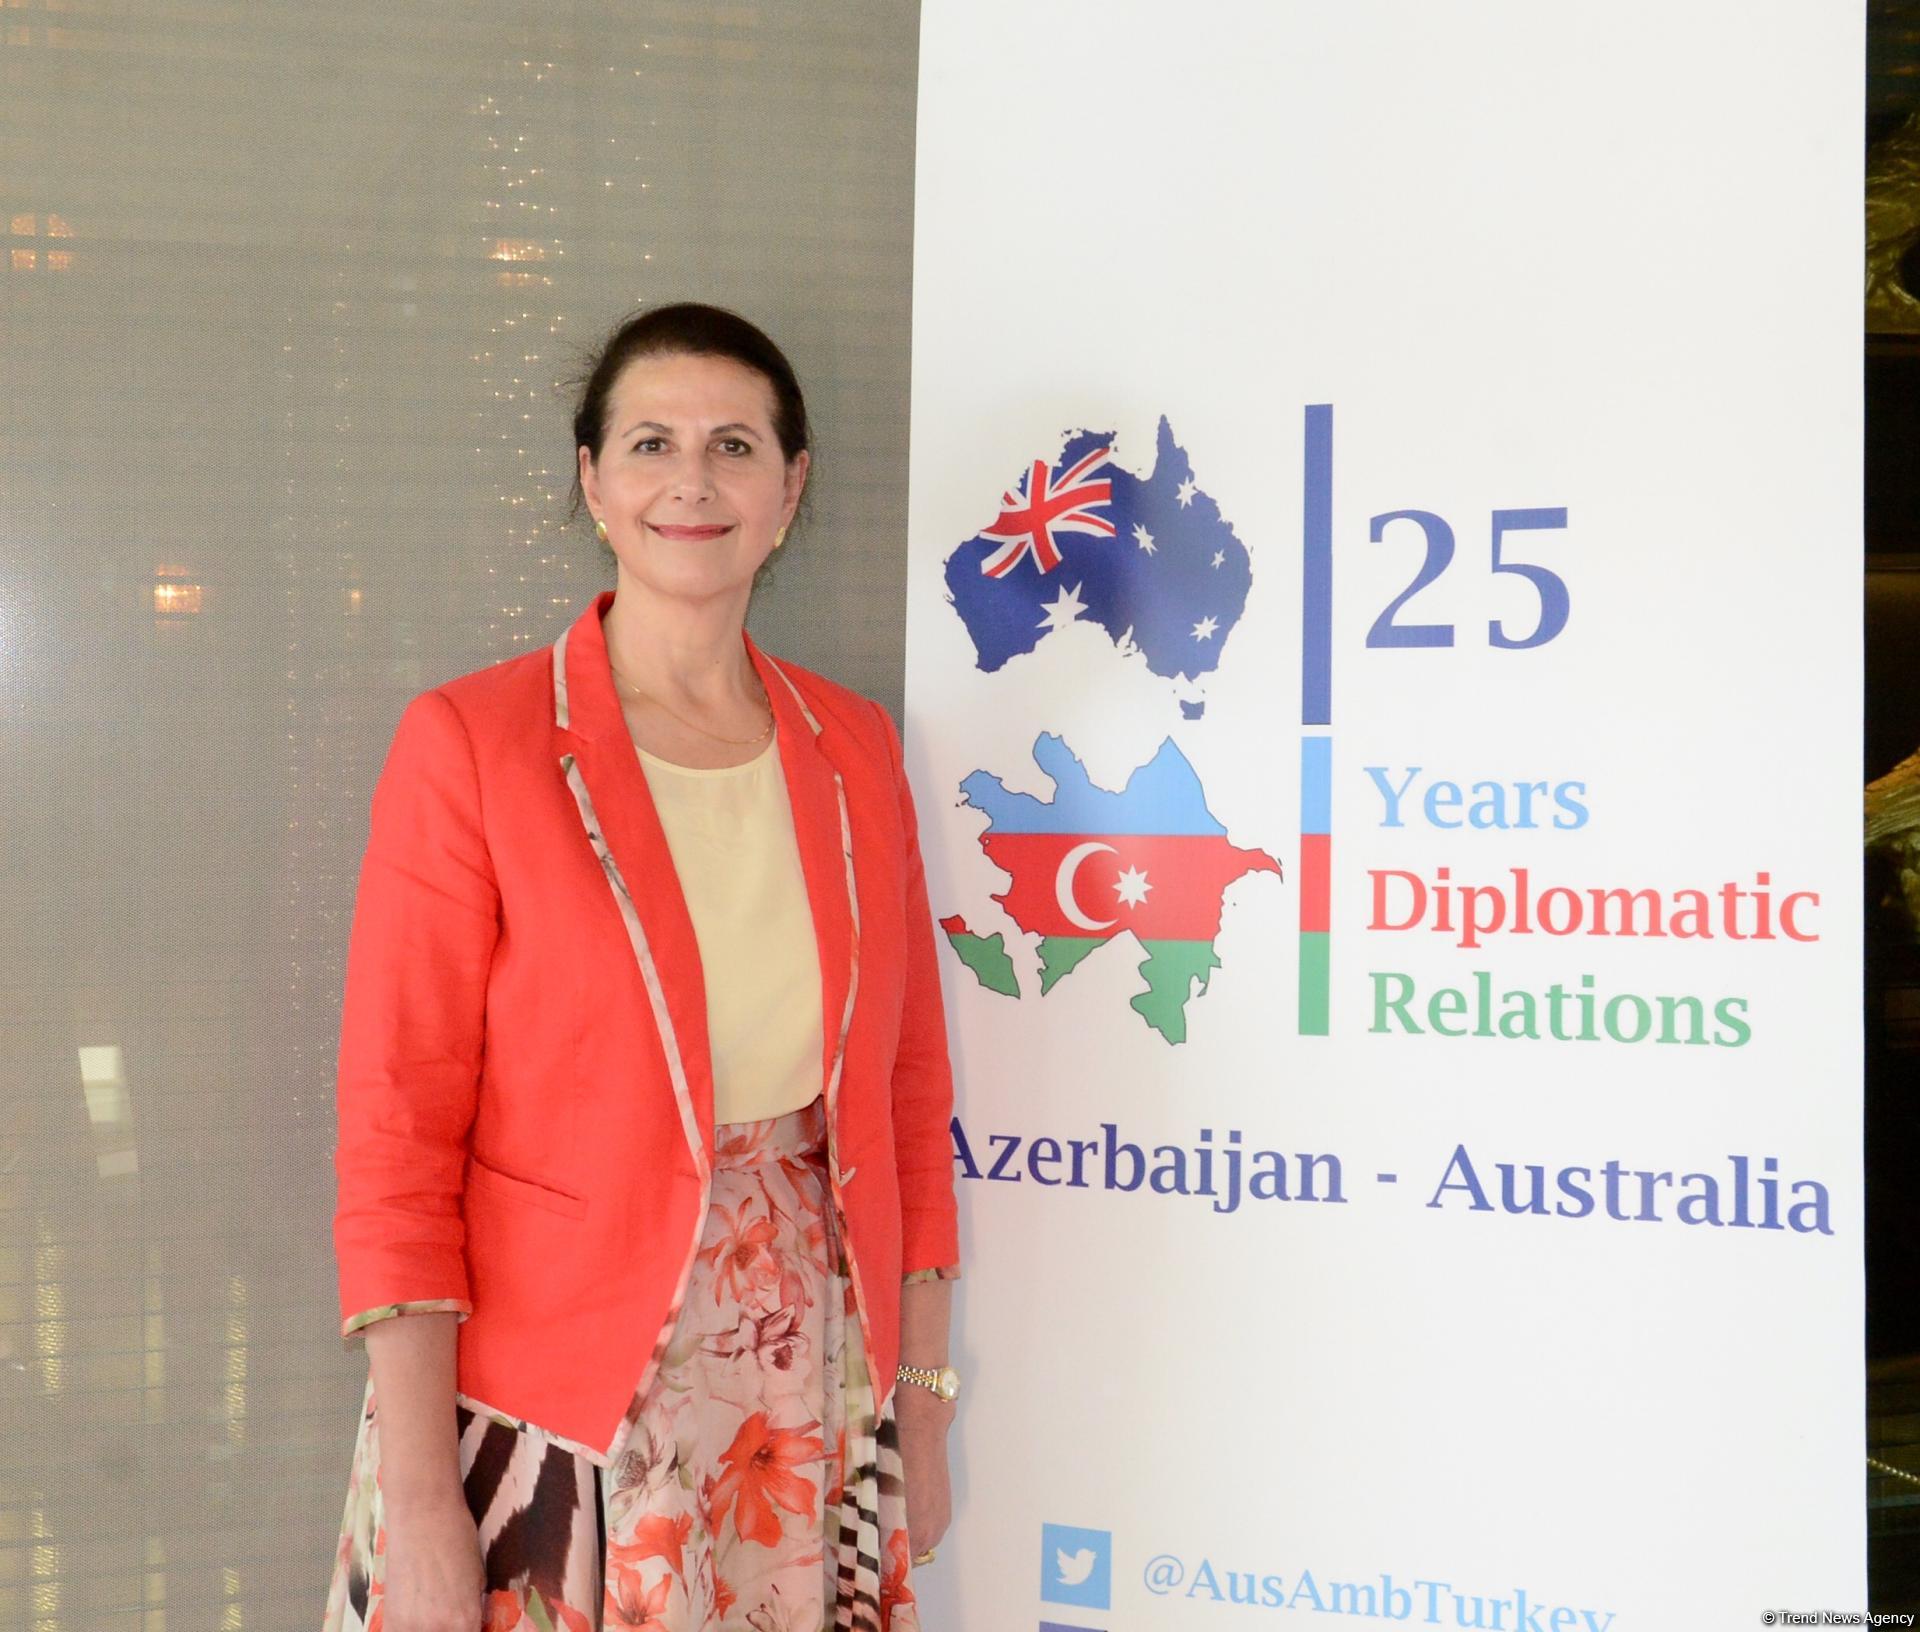 Австралия поддерживает позицию Азербайджана по урегулированию нагорно-карабахского конфликта - министр (ФОТО)